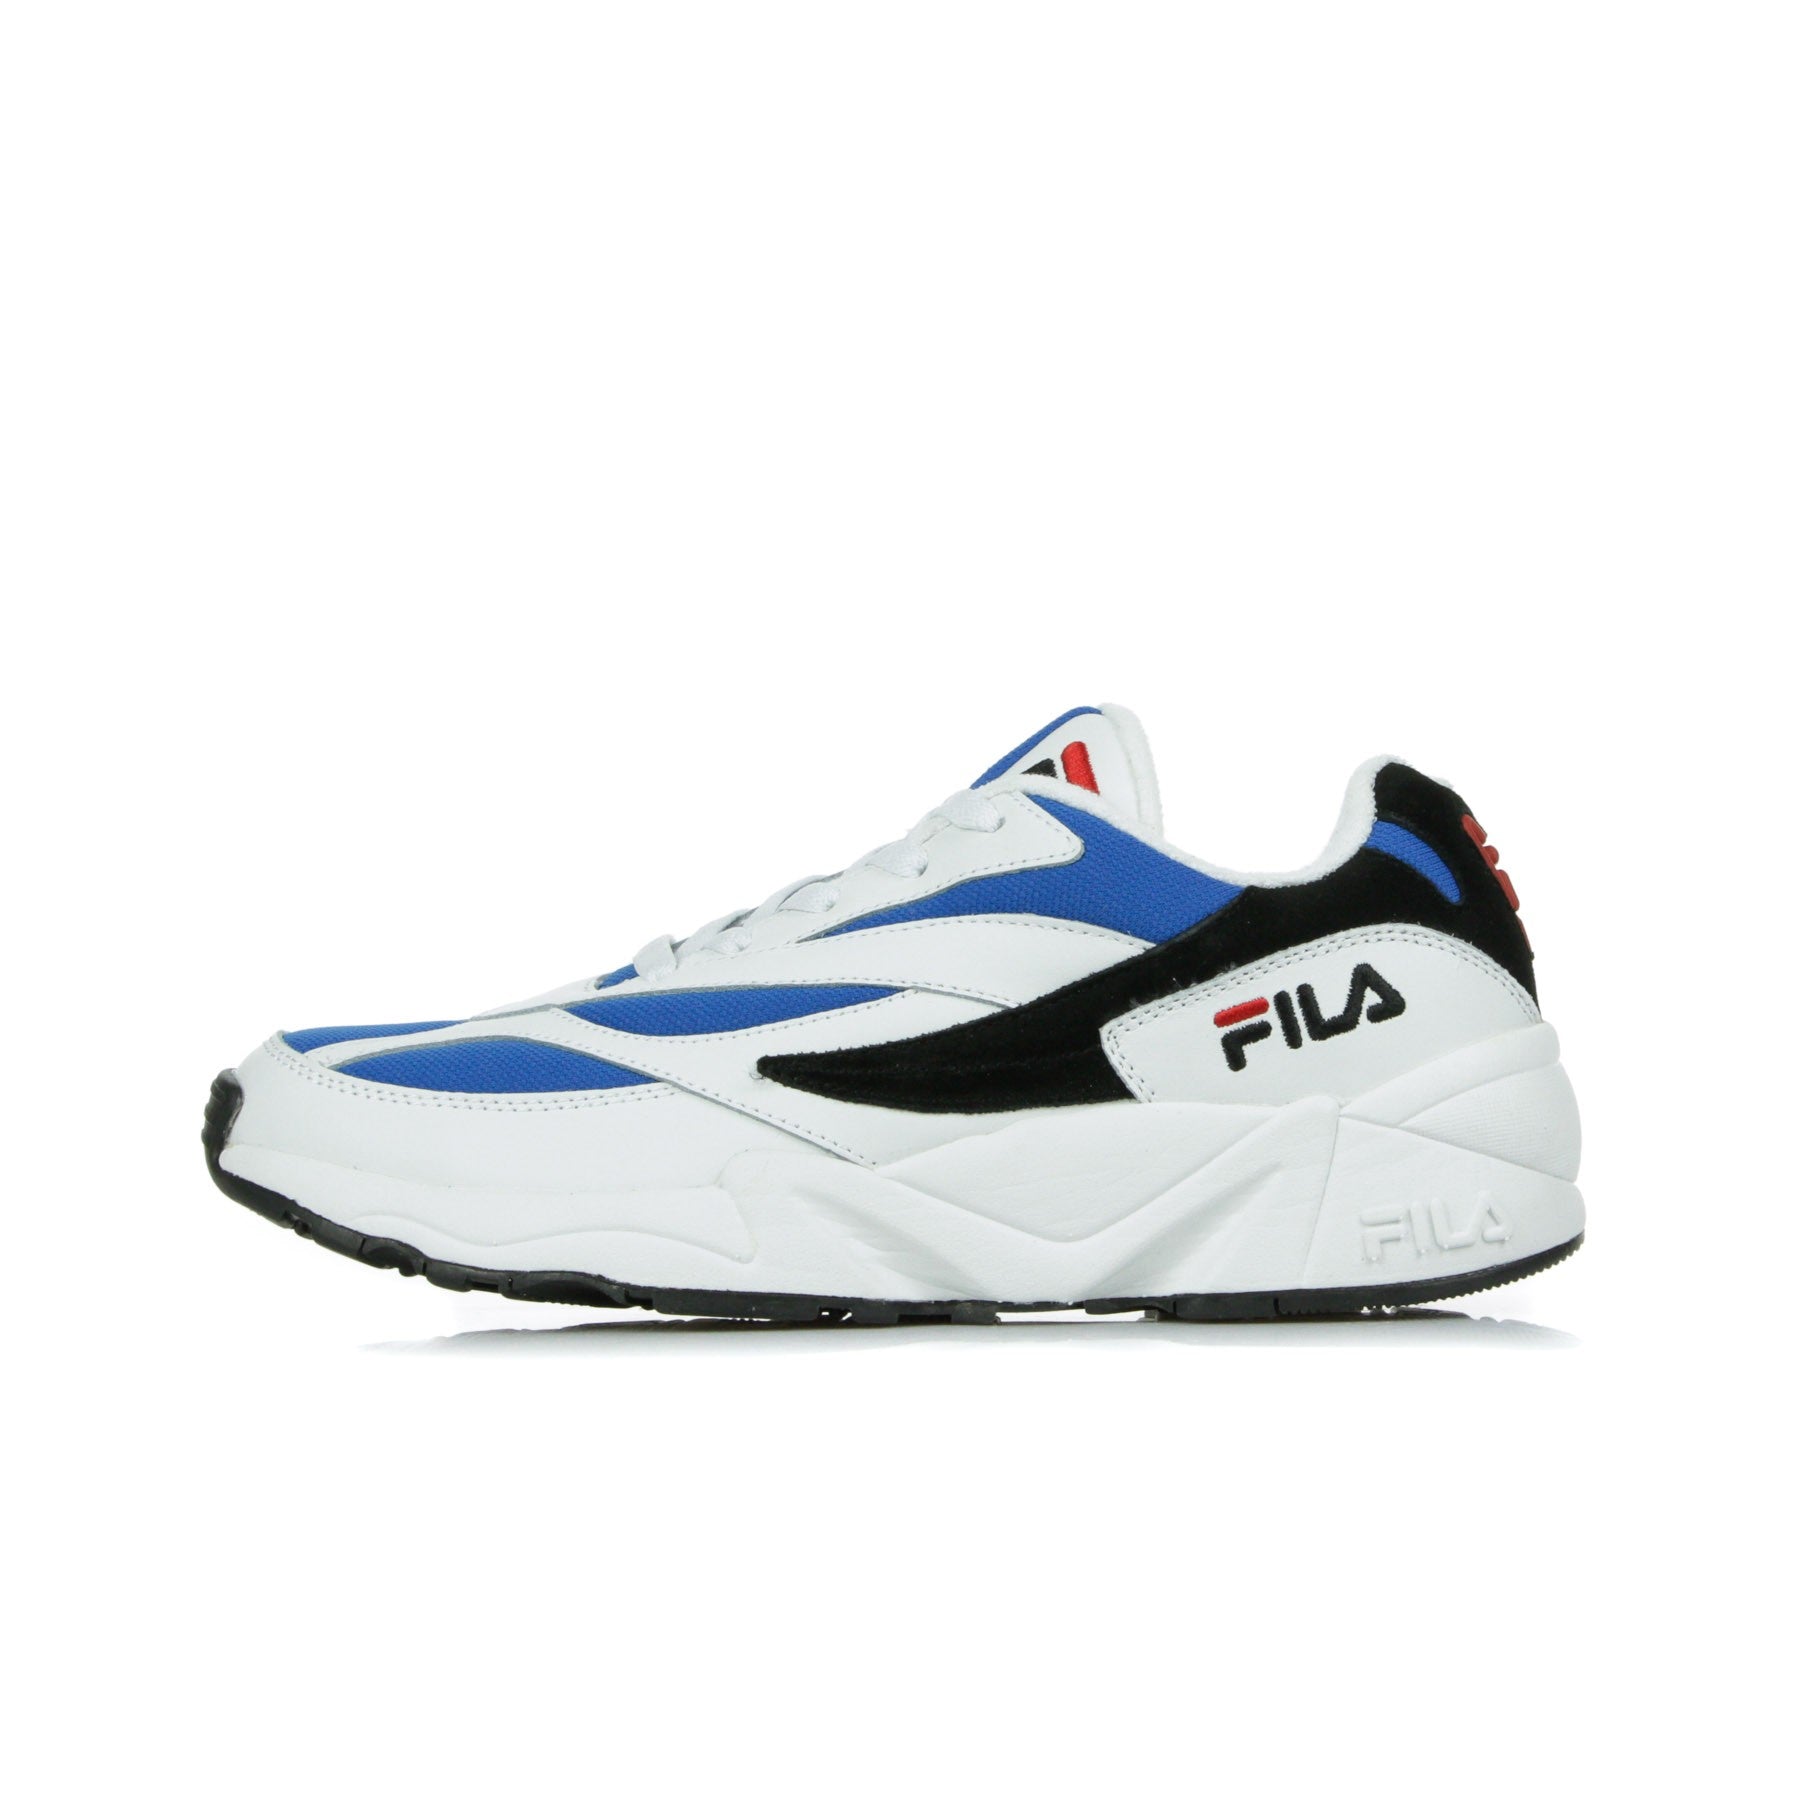 Fila V94m Low Men's Shoe Low White/electric Blue/black